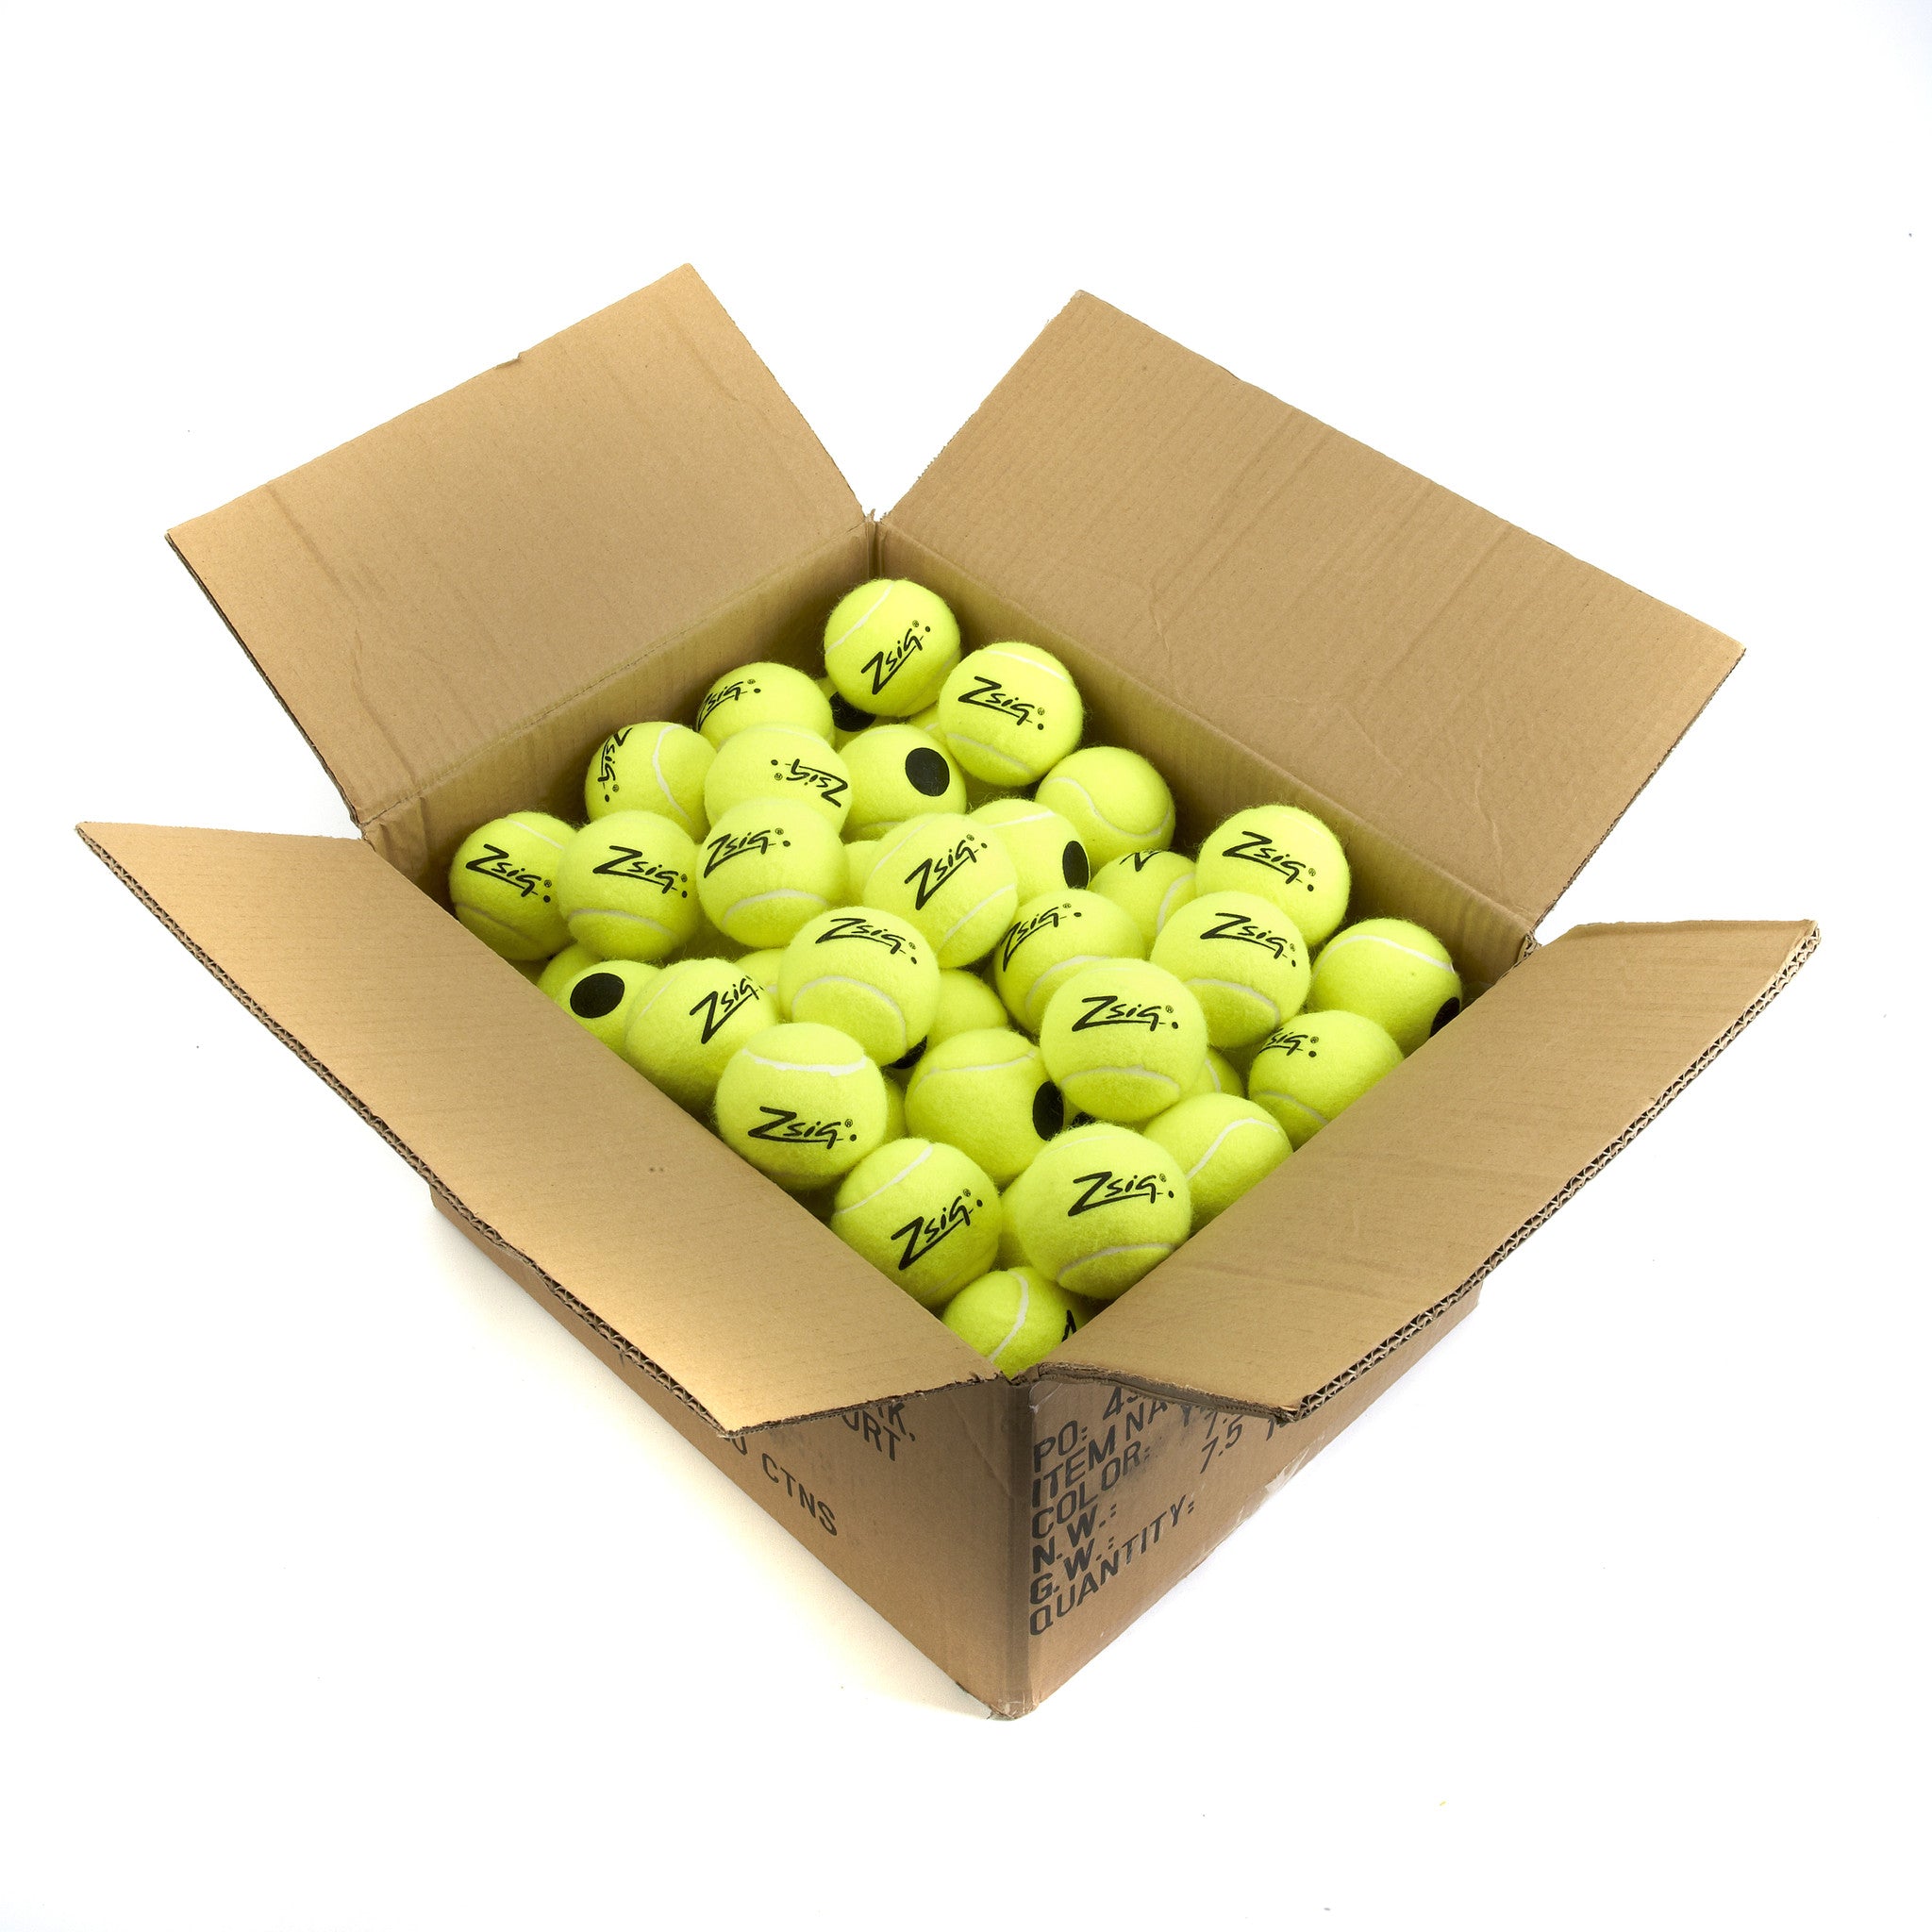 Training Tennis Balls - Zsig Black Dot. 10 dozen carton.